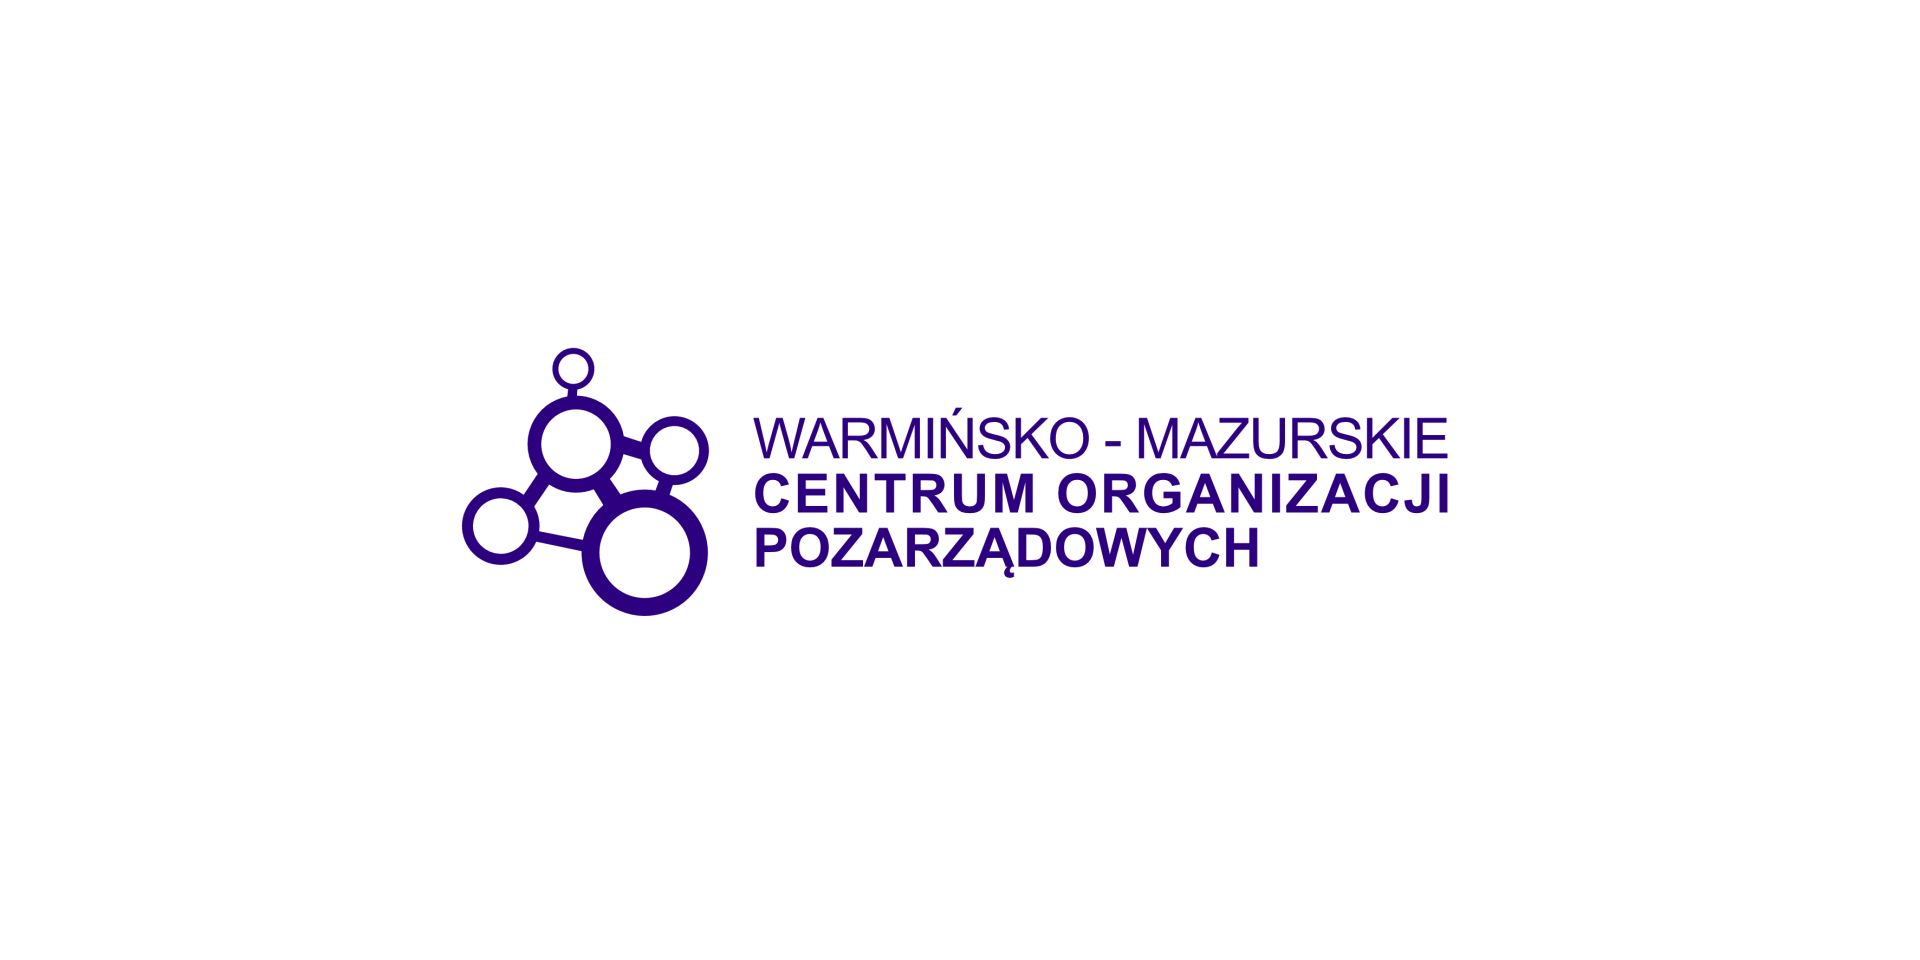 Warmińsko-Mazurskie Centrum Organizacji Pozarządowych